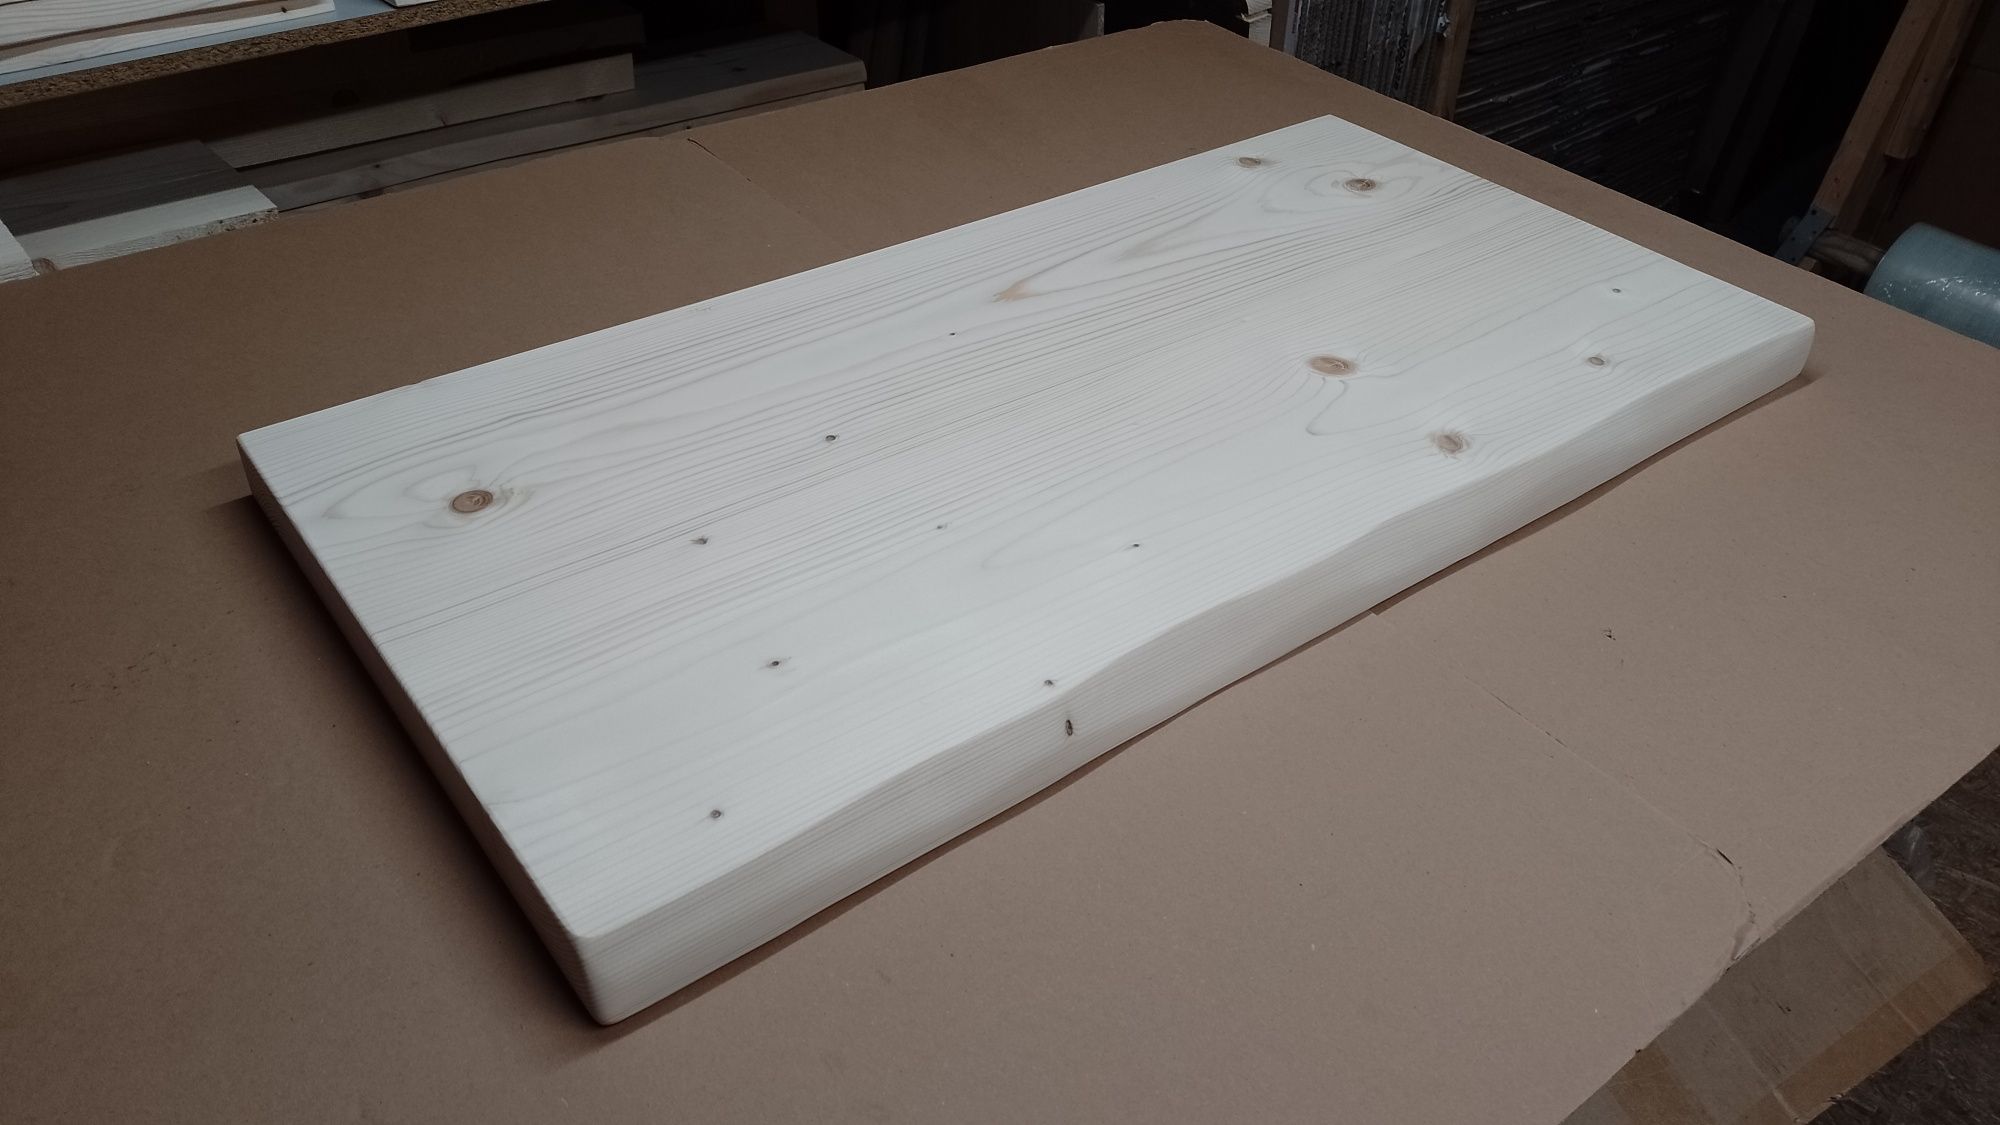 Blat 50x100cm gr 4,5cm drewniany blaty na wymiar drewniane deska